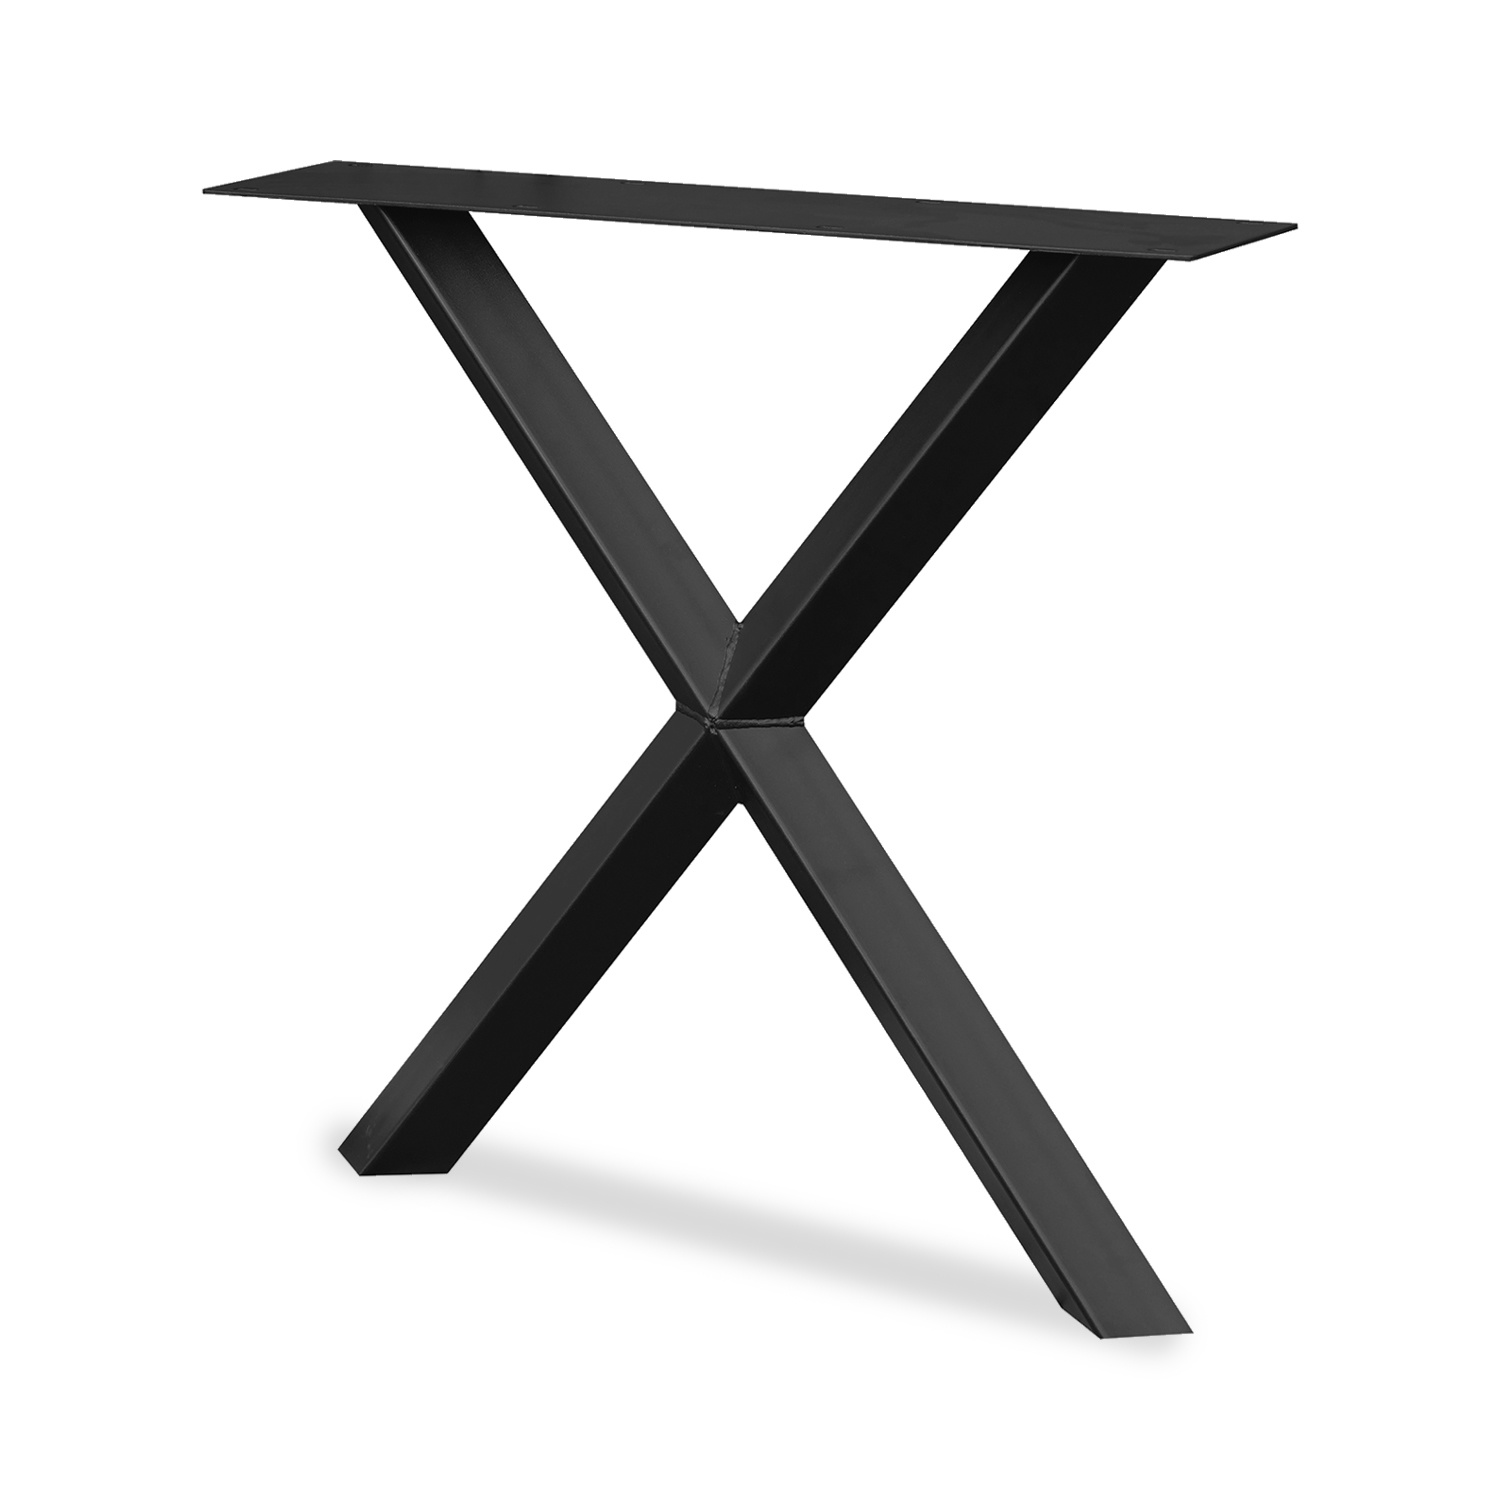  Stalen X-ster tafelpoten ELEGANT (SET) 5,5x5,5 cm - 78 cm breed - 72 cm hoog - Kruispoot ster - GEPOEDERCOAT Zwart